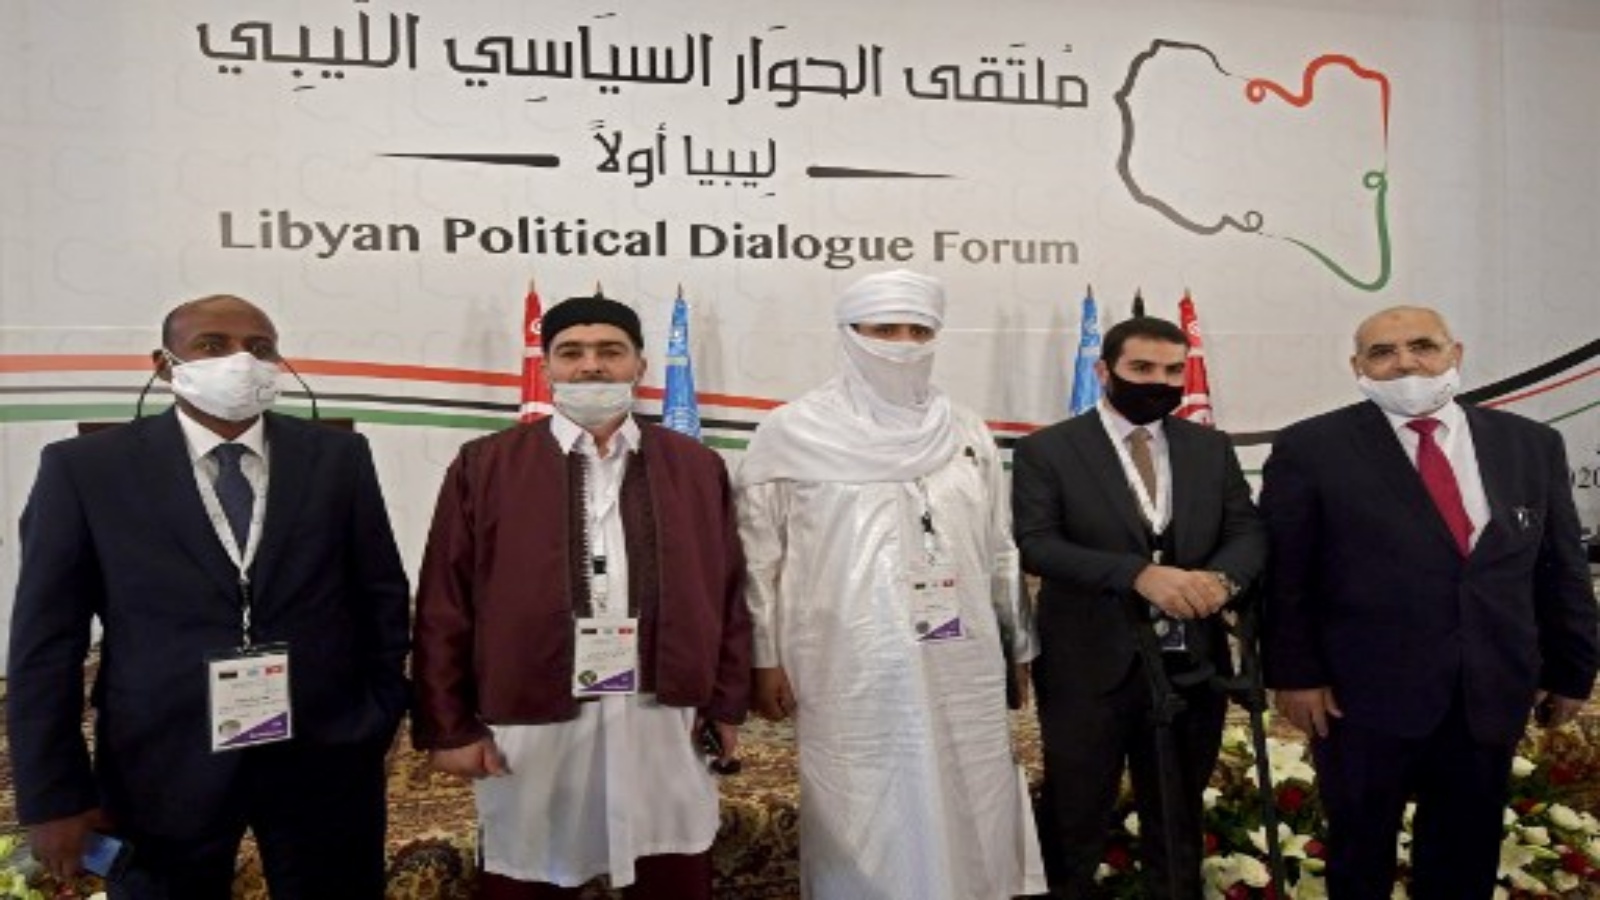 مندوبون ليبيون ، بينهم (من اليسار إلى اليمين) عبد السلام شوها ، وعبدالله شيباني ، وحسين محمد الأنصاري ، مشارك غير معروف ، وعبد المجيد ملاقطه ، افتتاح منتدى الحوار السياسي الليبي الذي استضافته قمرت بضواحي العاصمة التونسية يوم 9 نوفمبر 2020